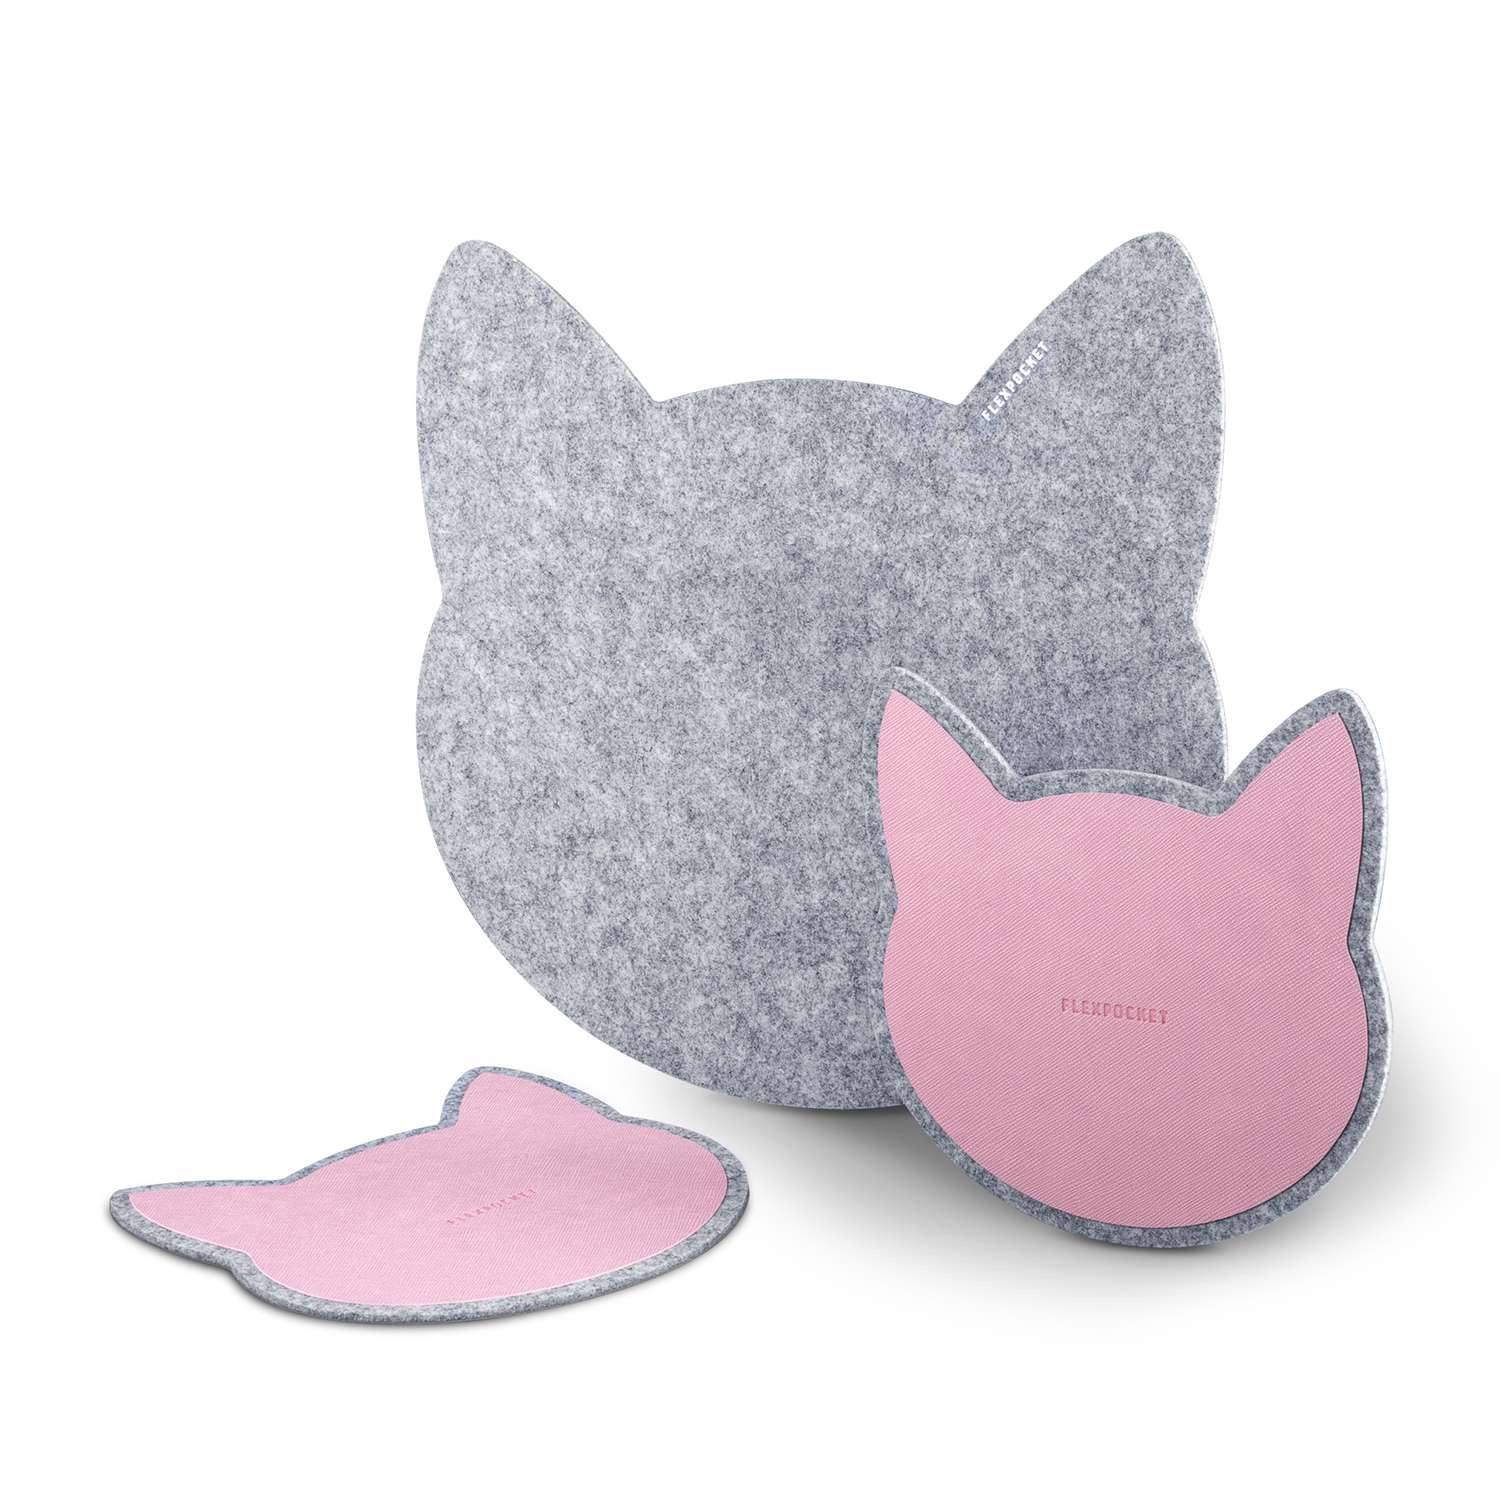 Настольный коврик Flexpocket для мыши в виде кошки + комплект с подставкой под кружку светло-серый - фото 2